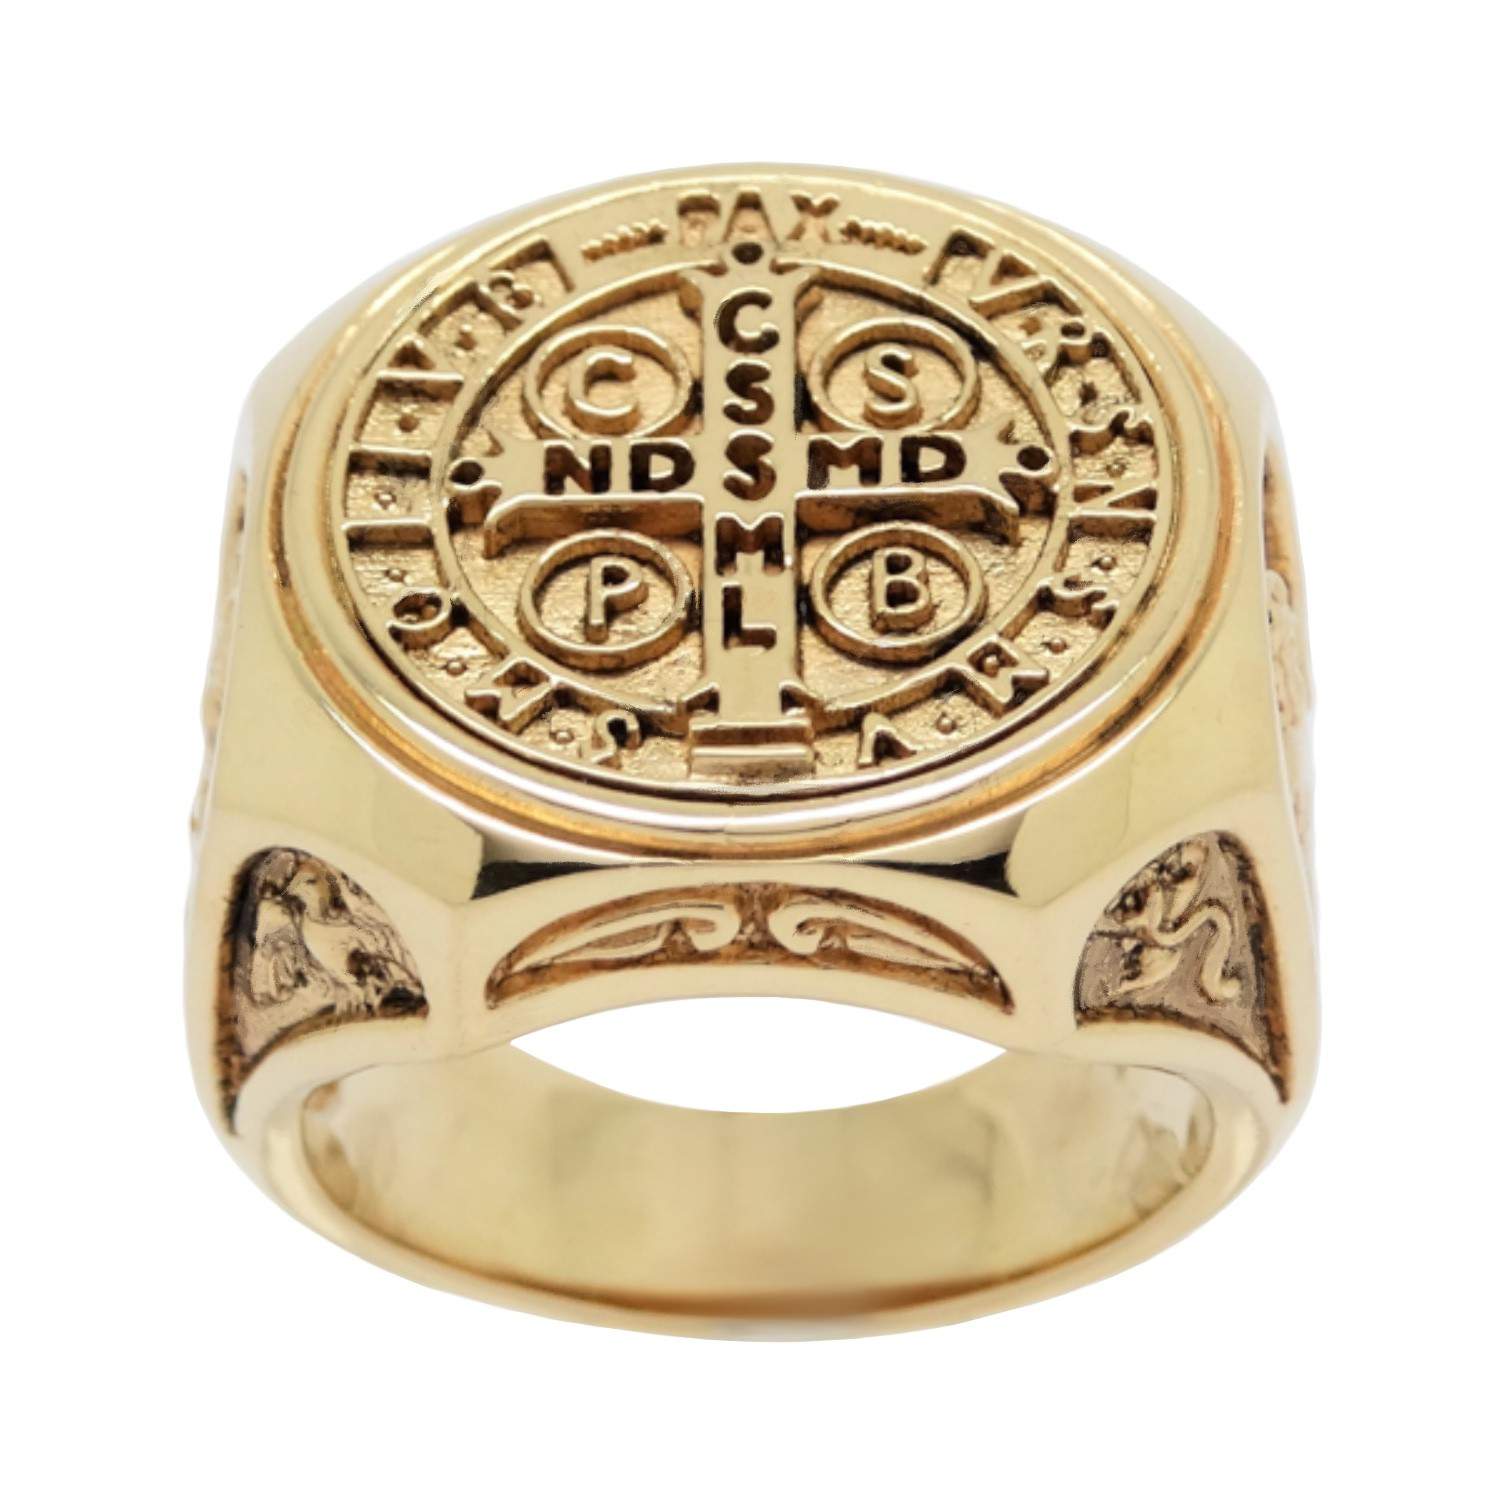 Stunning Christian Rings | Atrio Hill - men's rings - men's rings